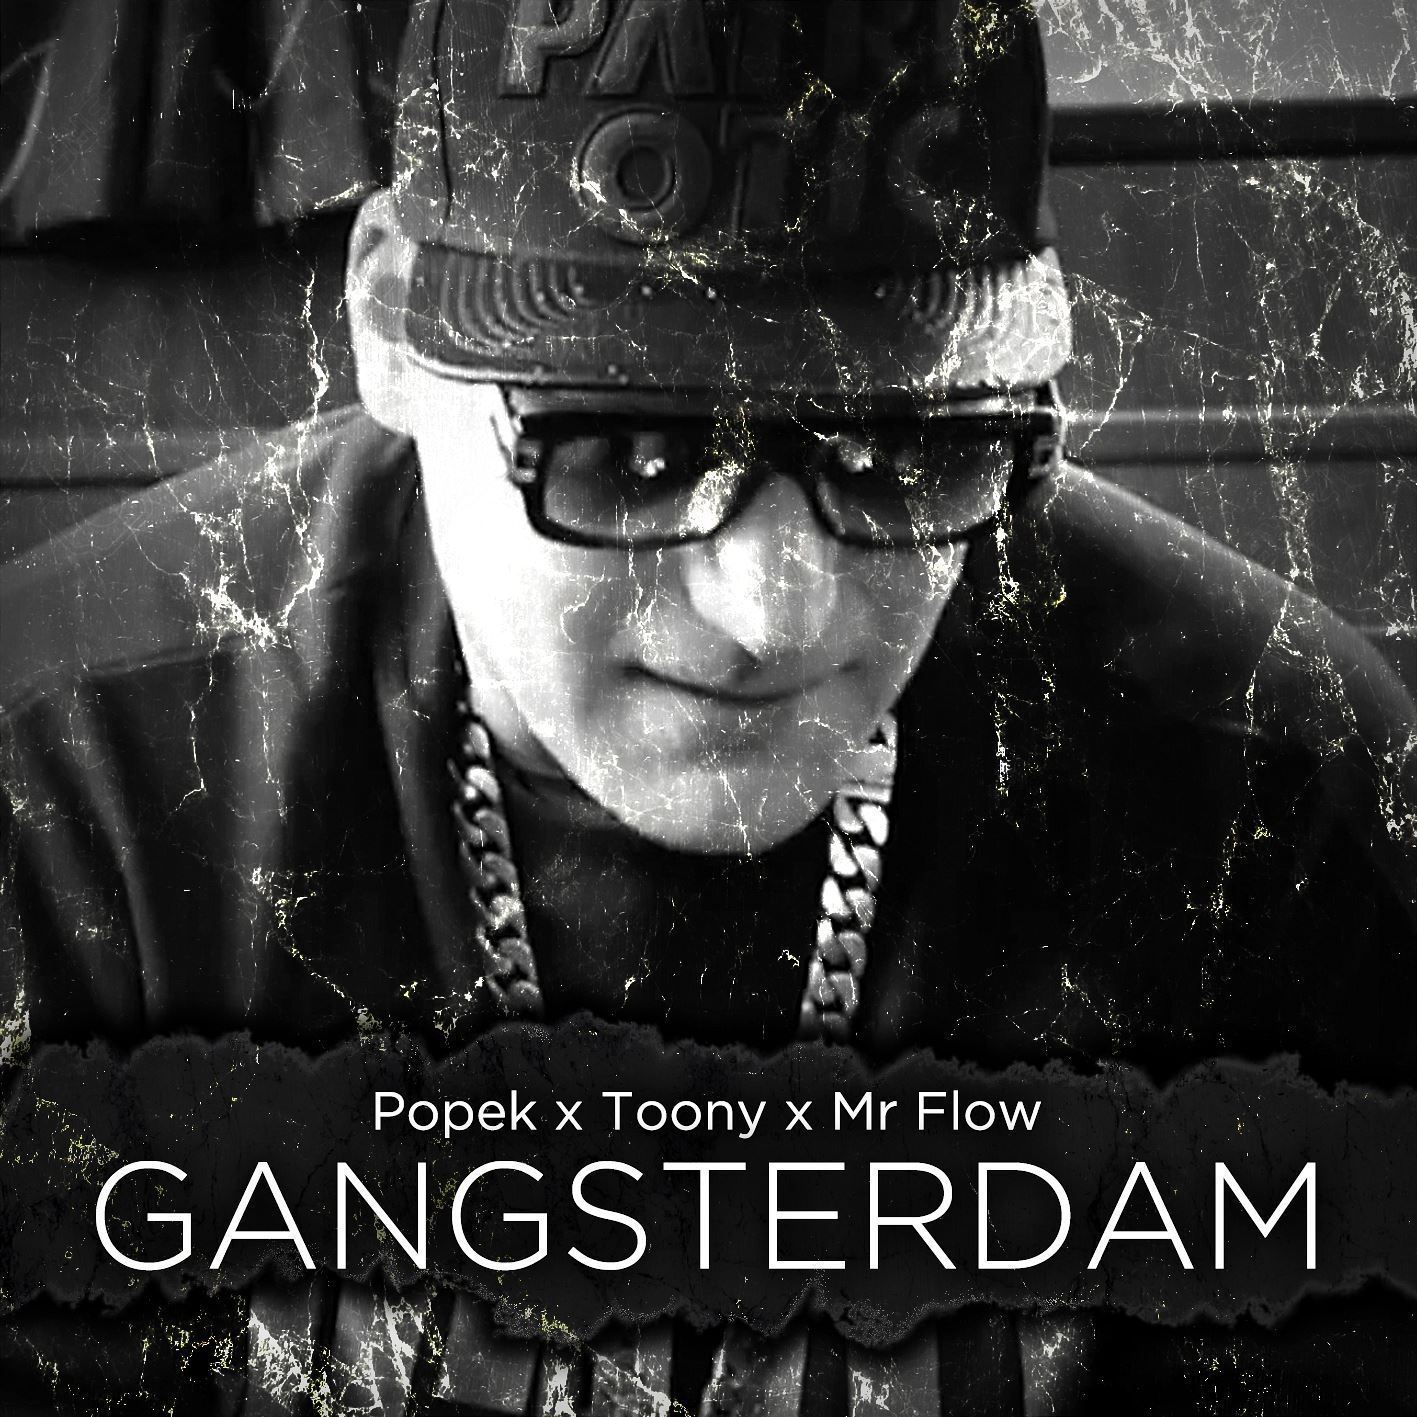 Gangsterdam